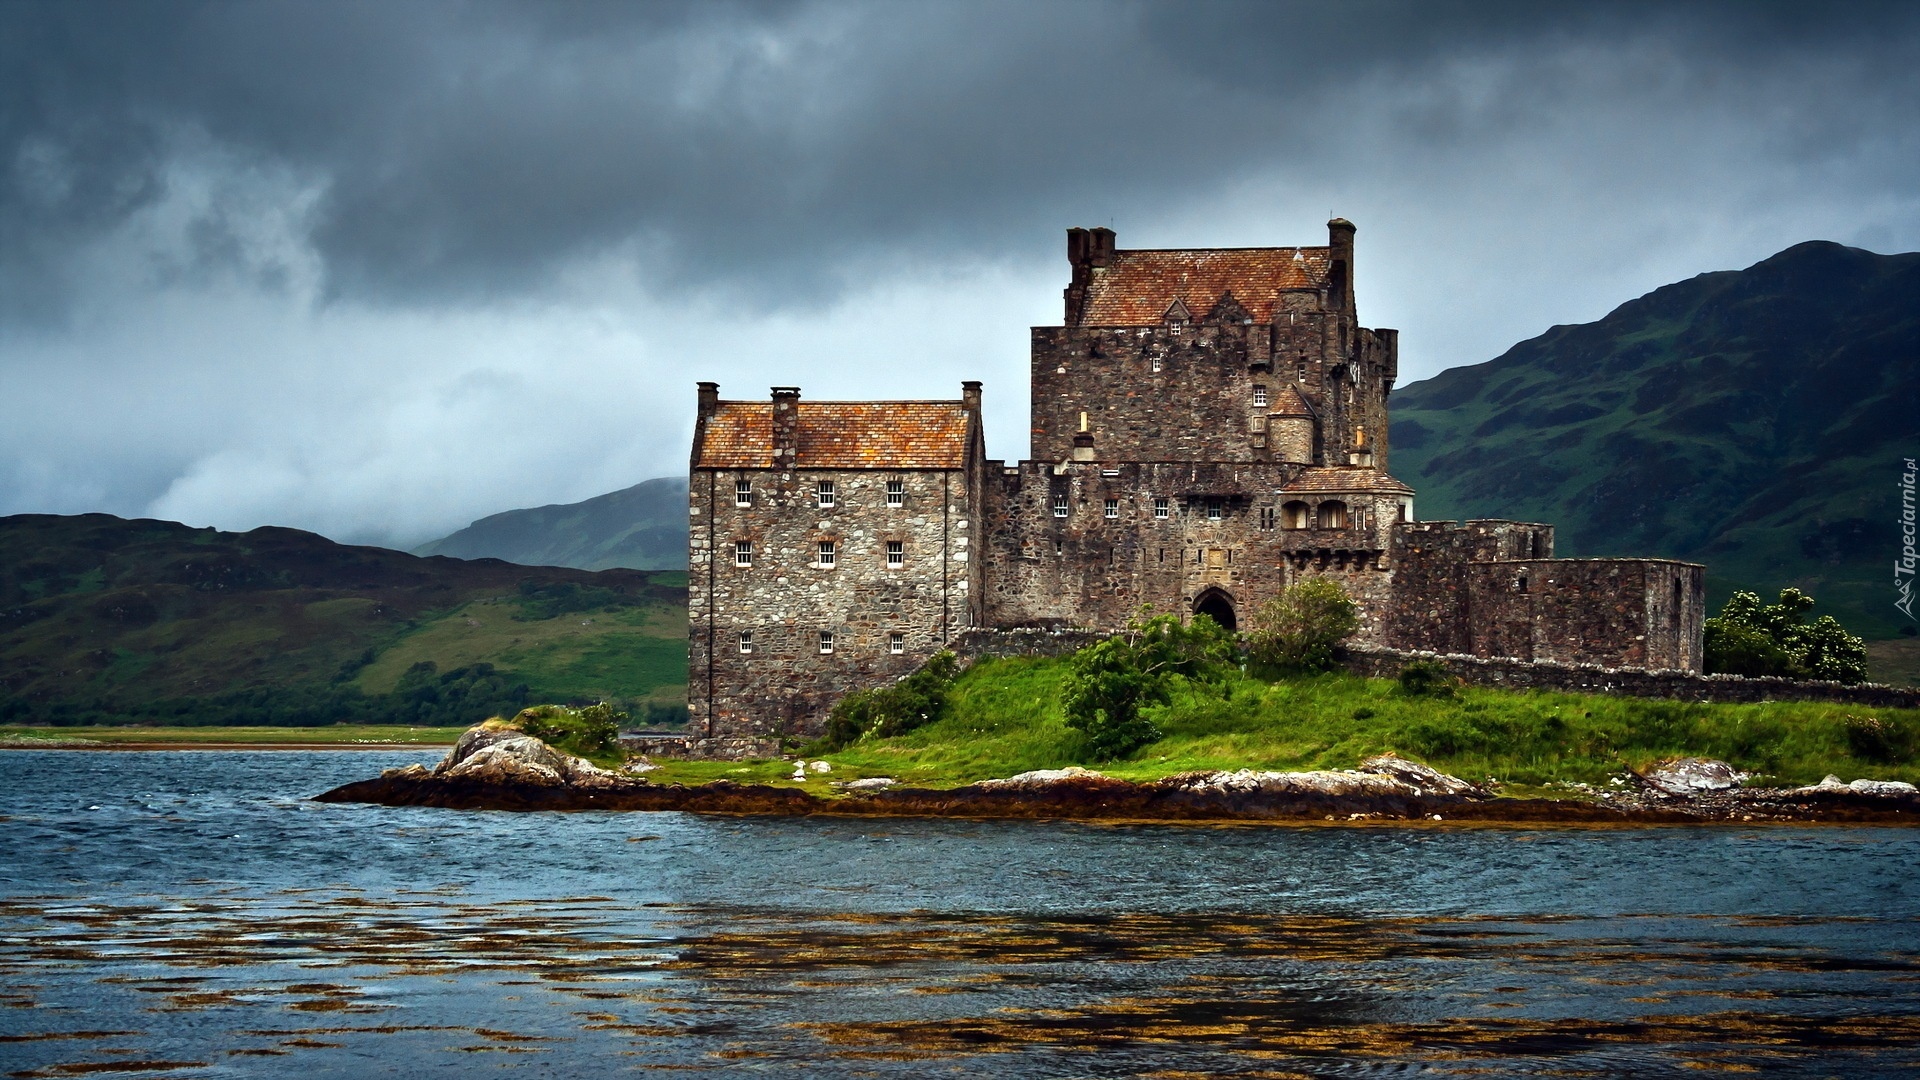 Zamek Eilean Donan, Wyspa Loch Duich, Region Highland, Szkocja, Jezioro